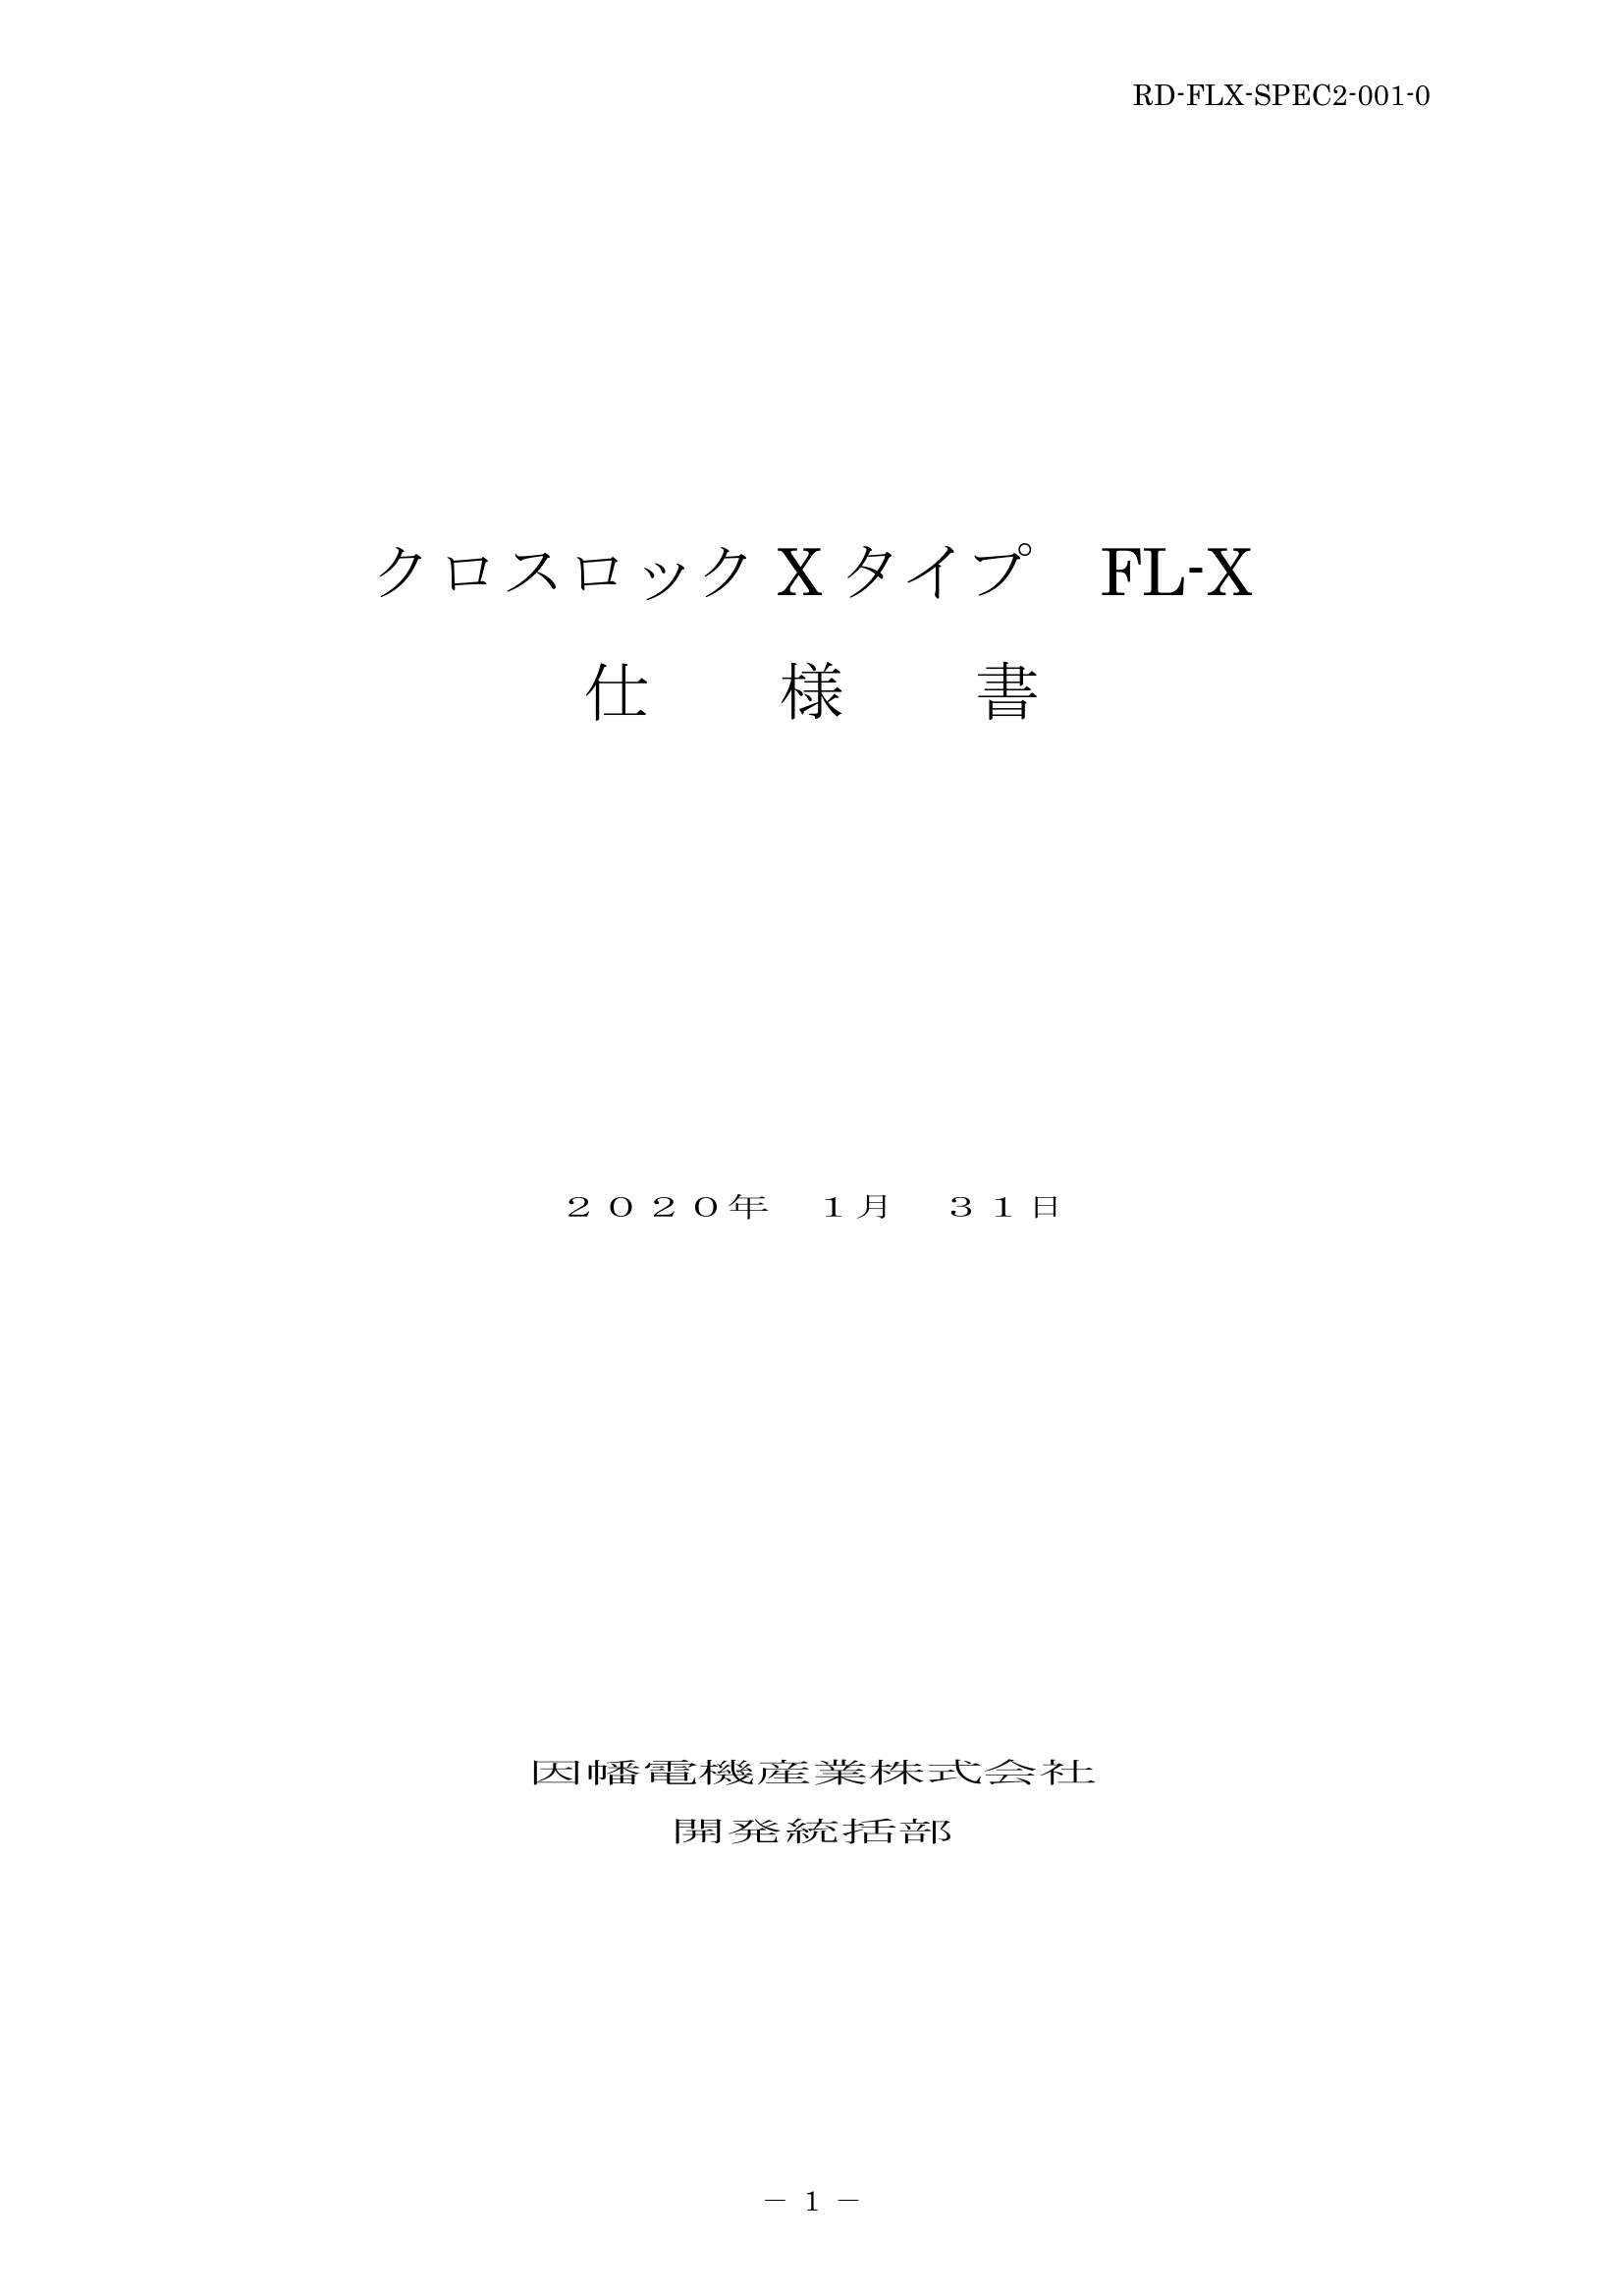 FL-X_仕様書_20200131.pdf